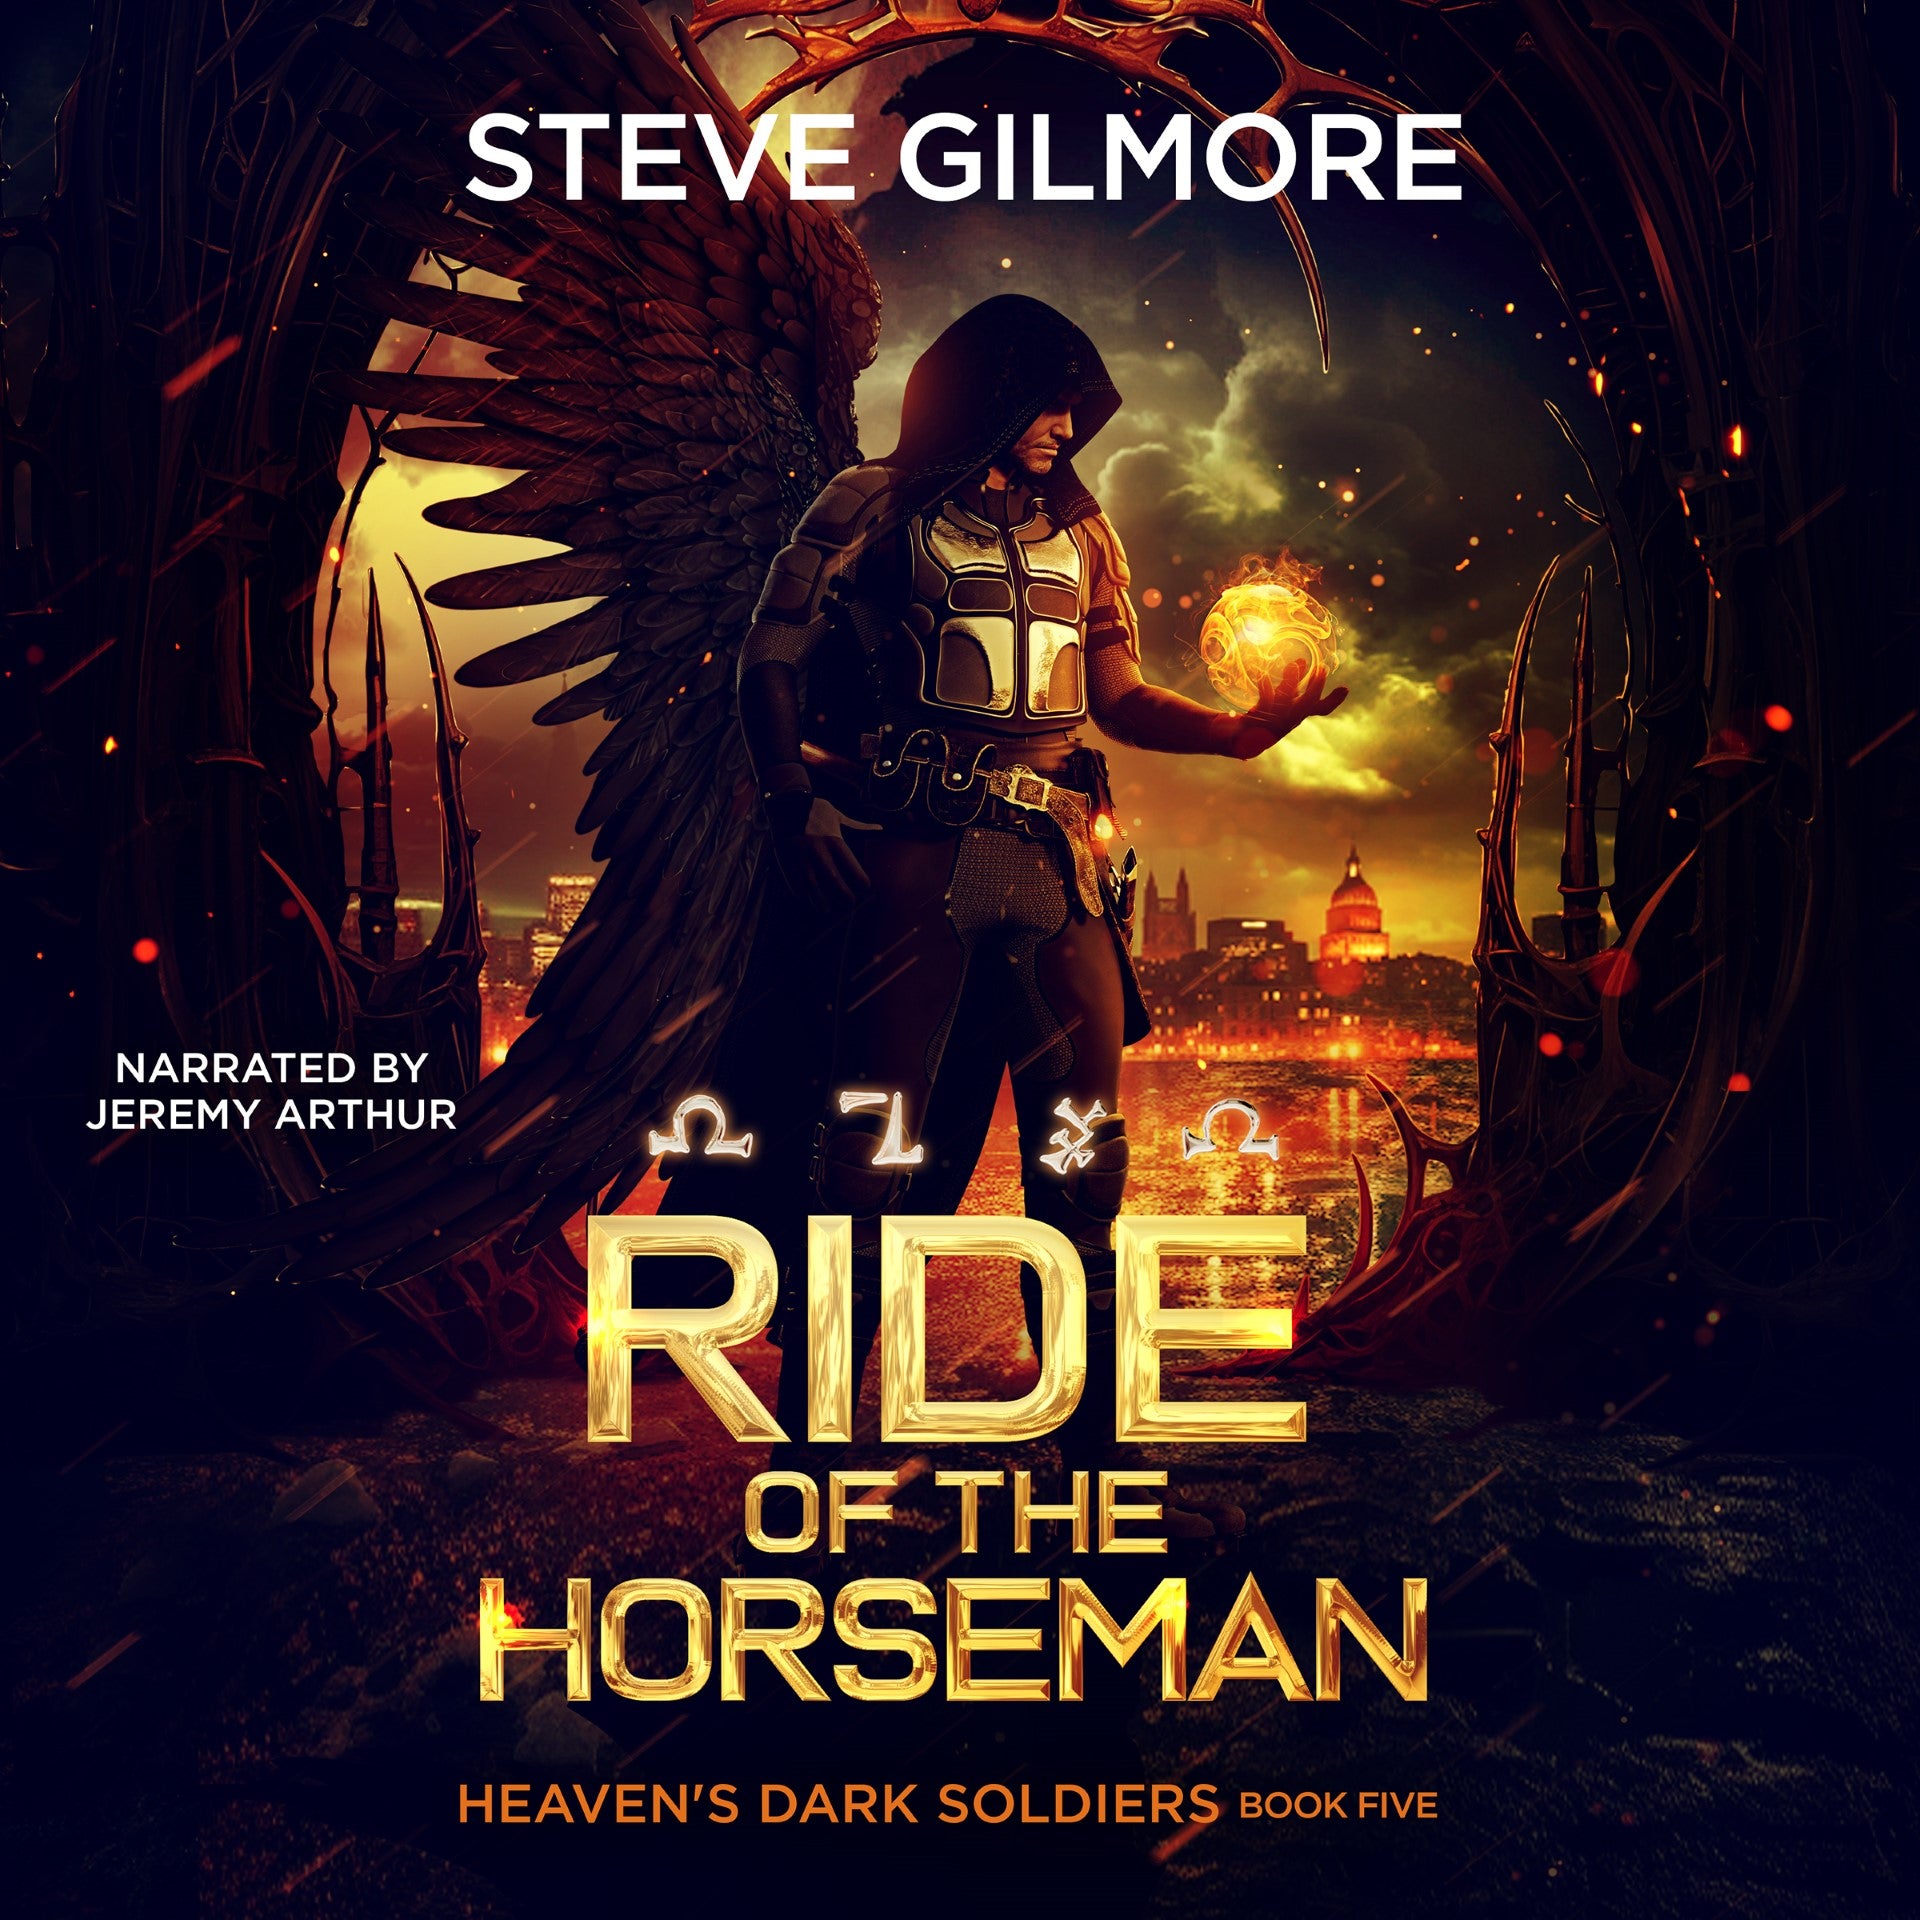 Ride of the Horseman (Heaven's Dark Soldiers Book 5)